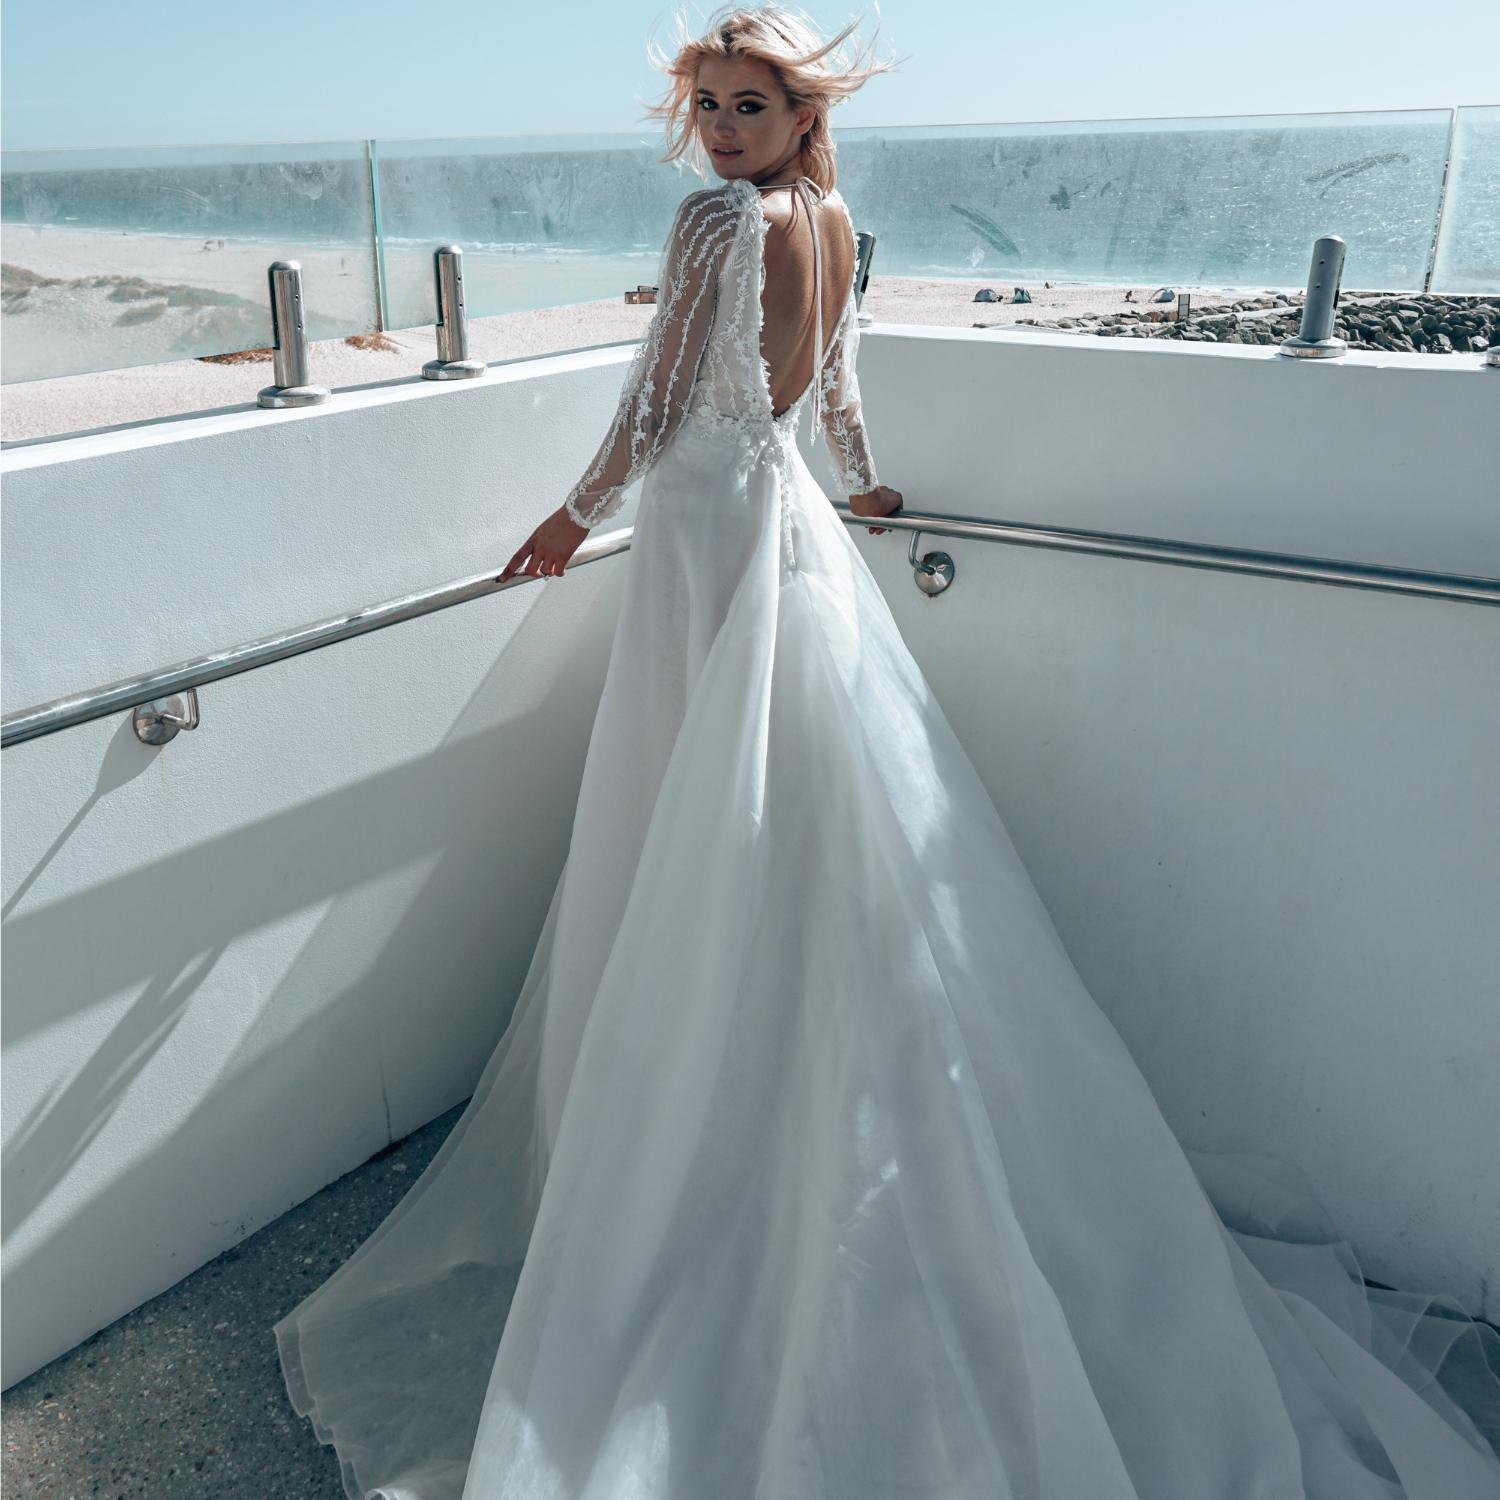 Daydream wedding dress by Rachel Rose Bridal 